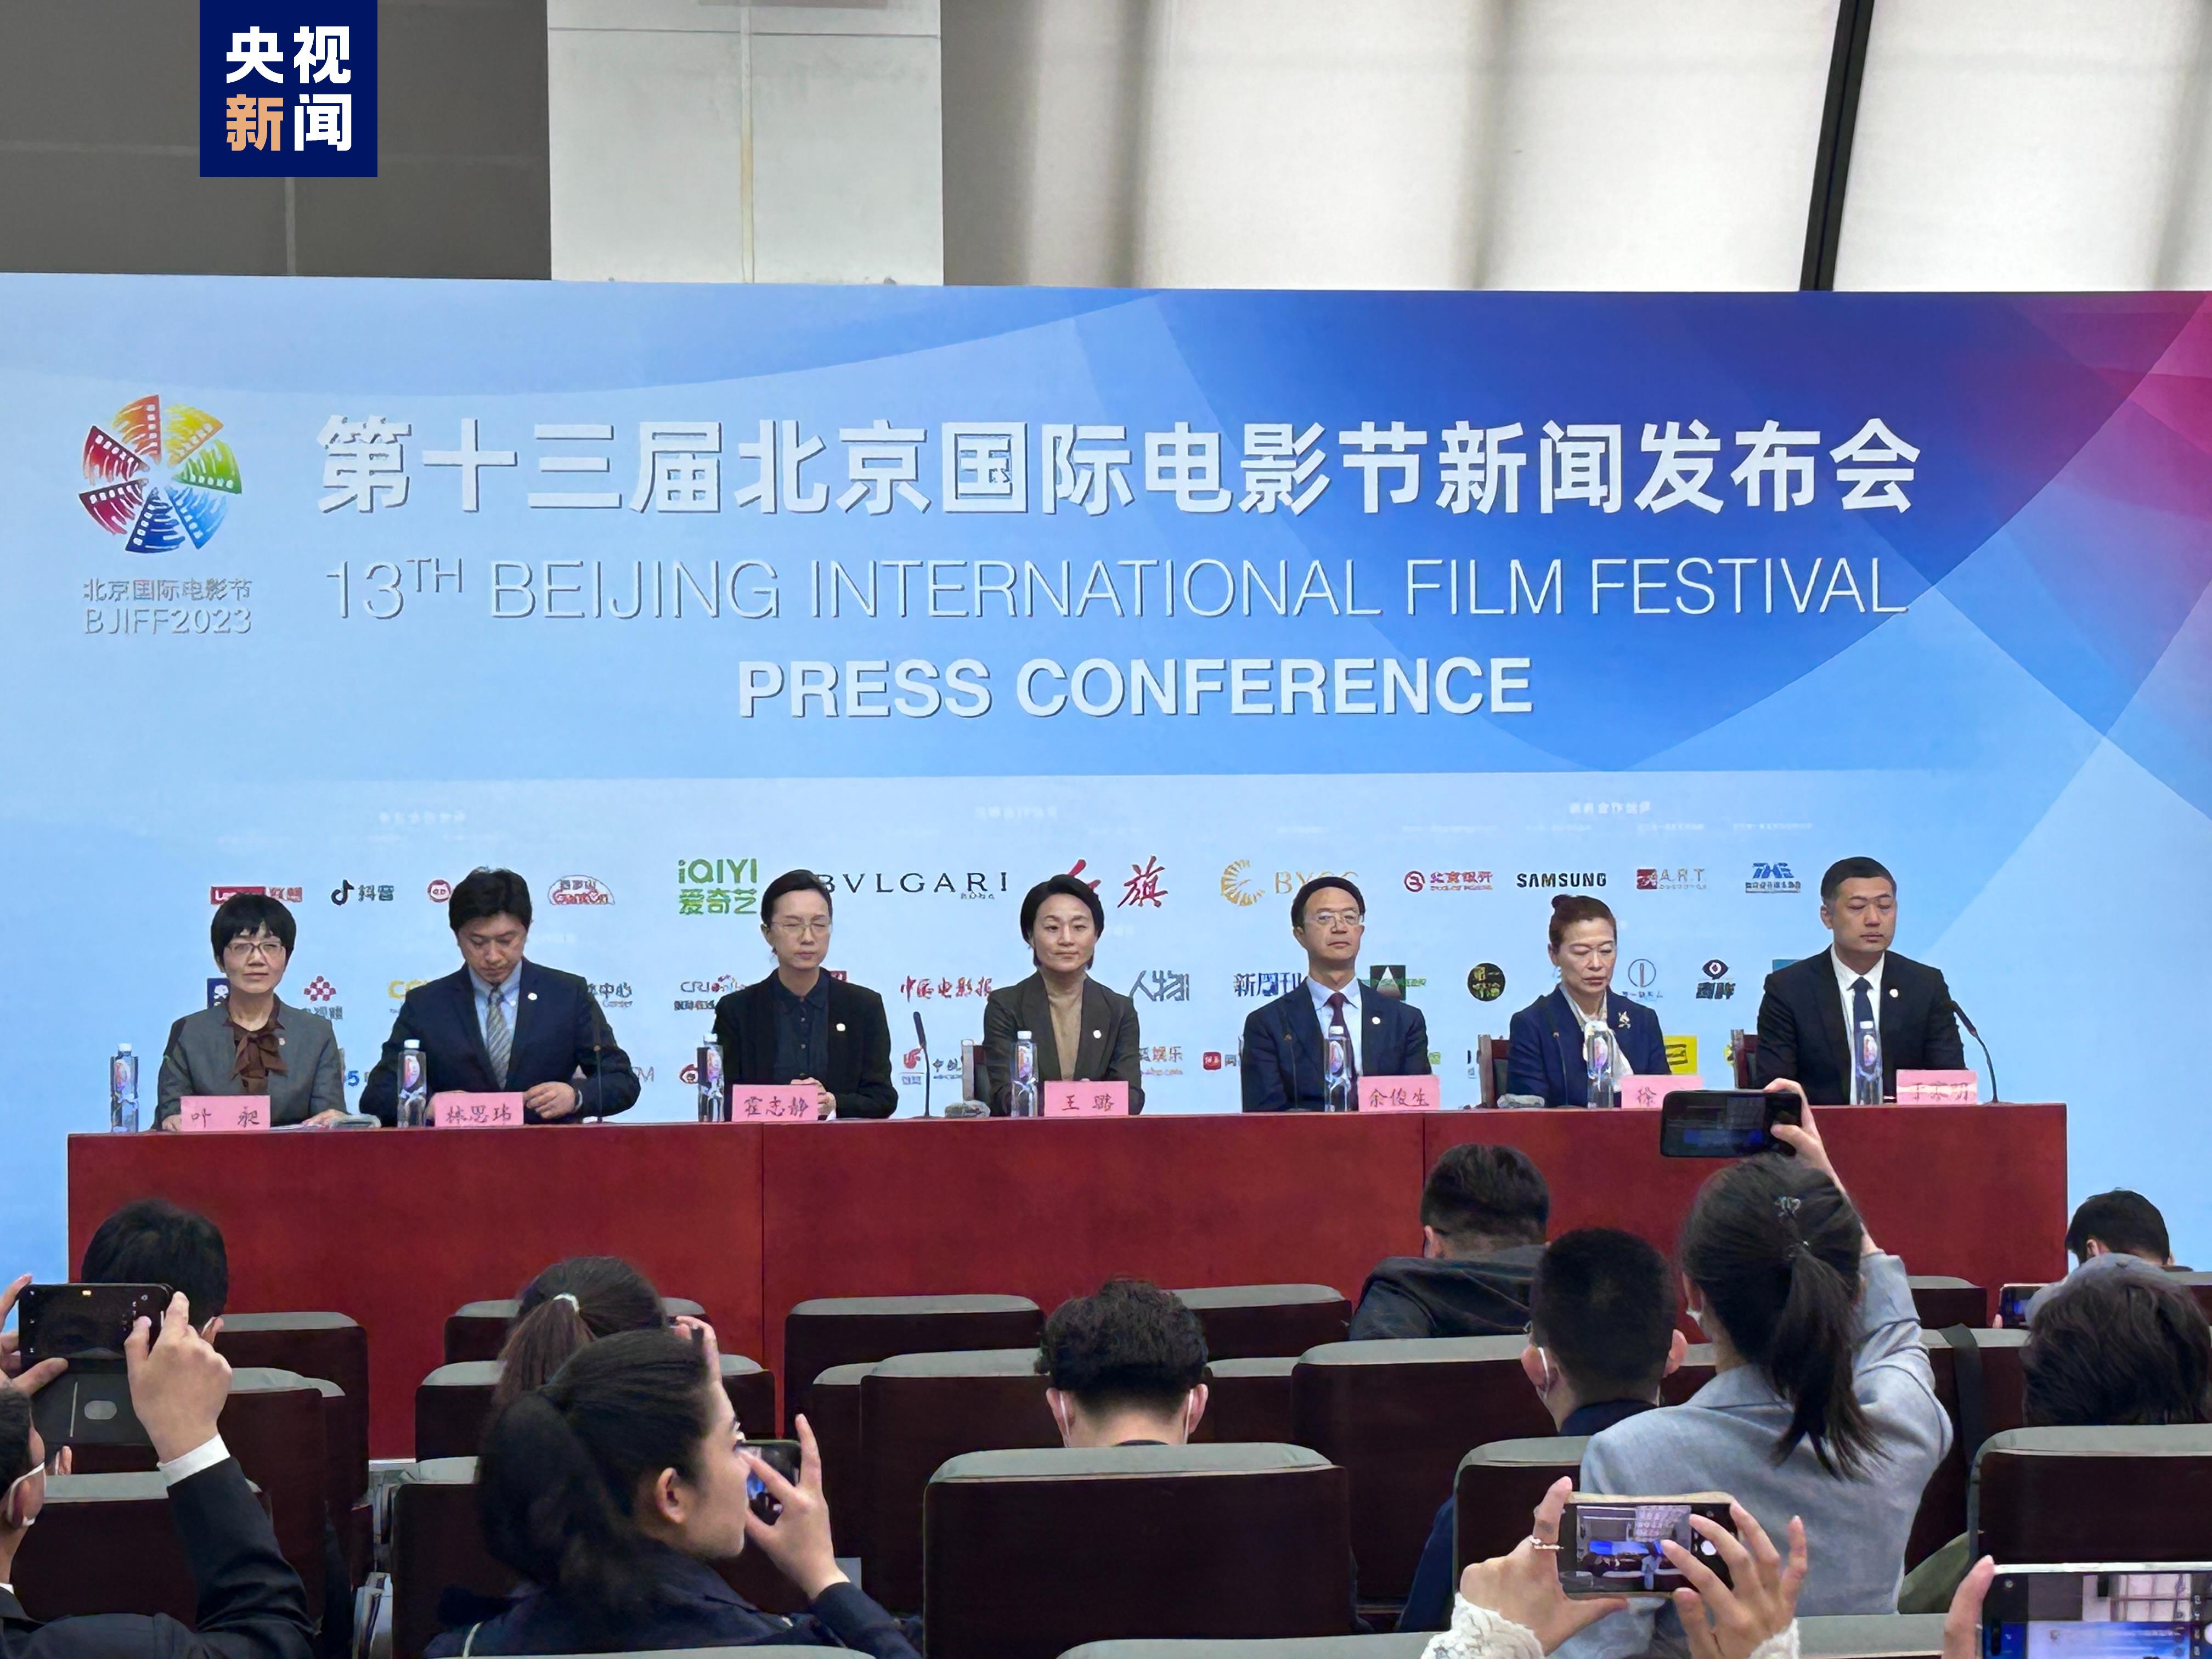 第十三届北京国际电影节将于4月22日至29日举办 入围影片公布